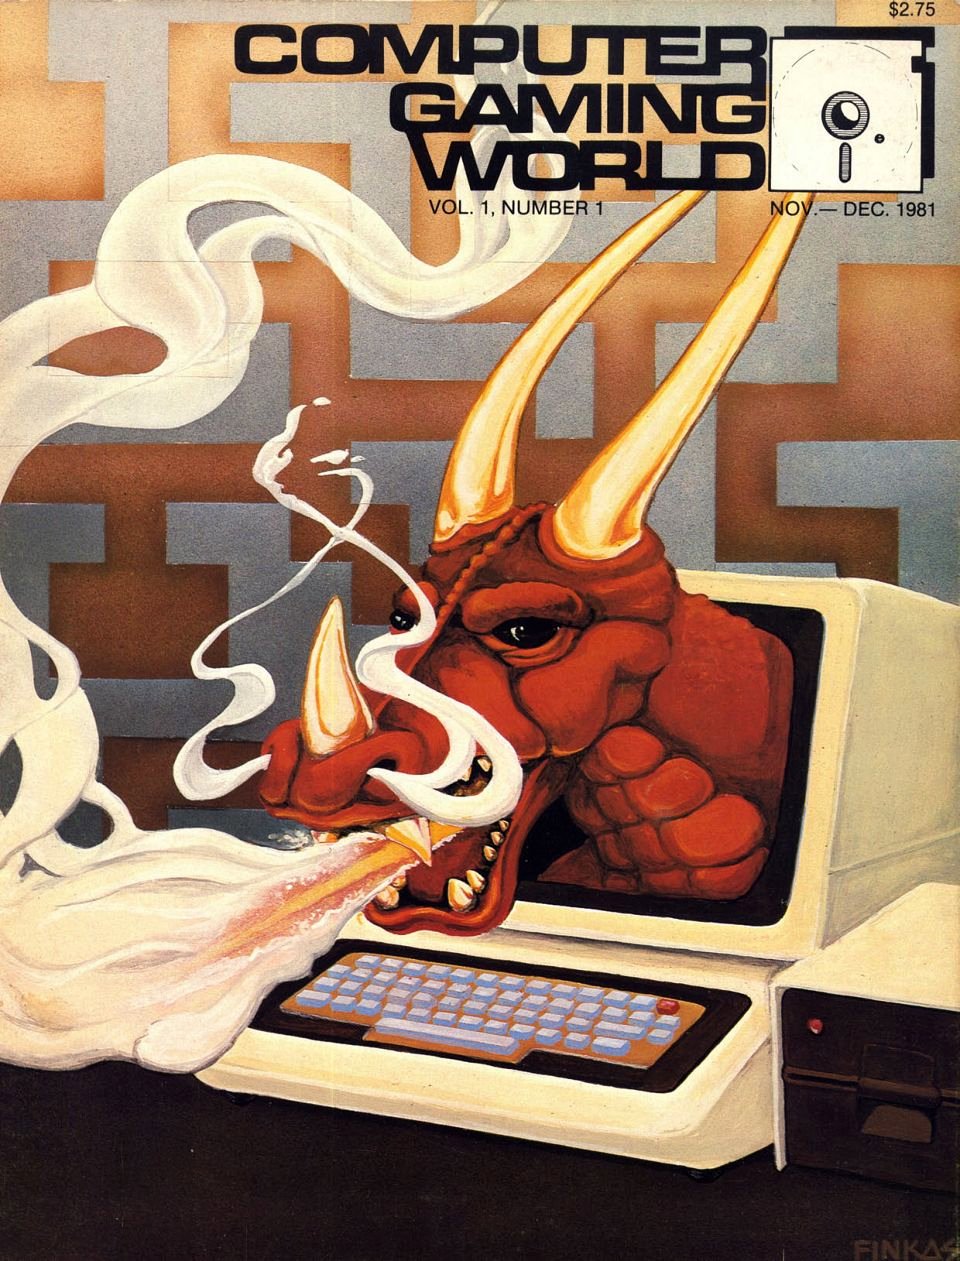 CGW 1.1 (Nov.-Dec. 1981)